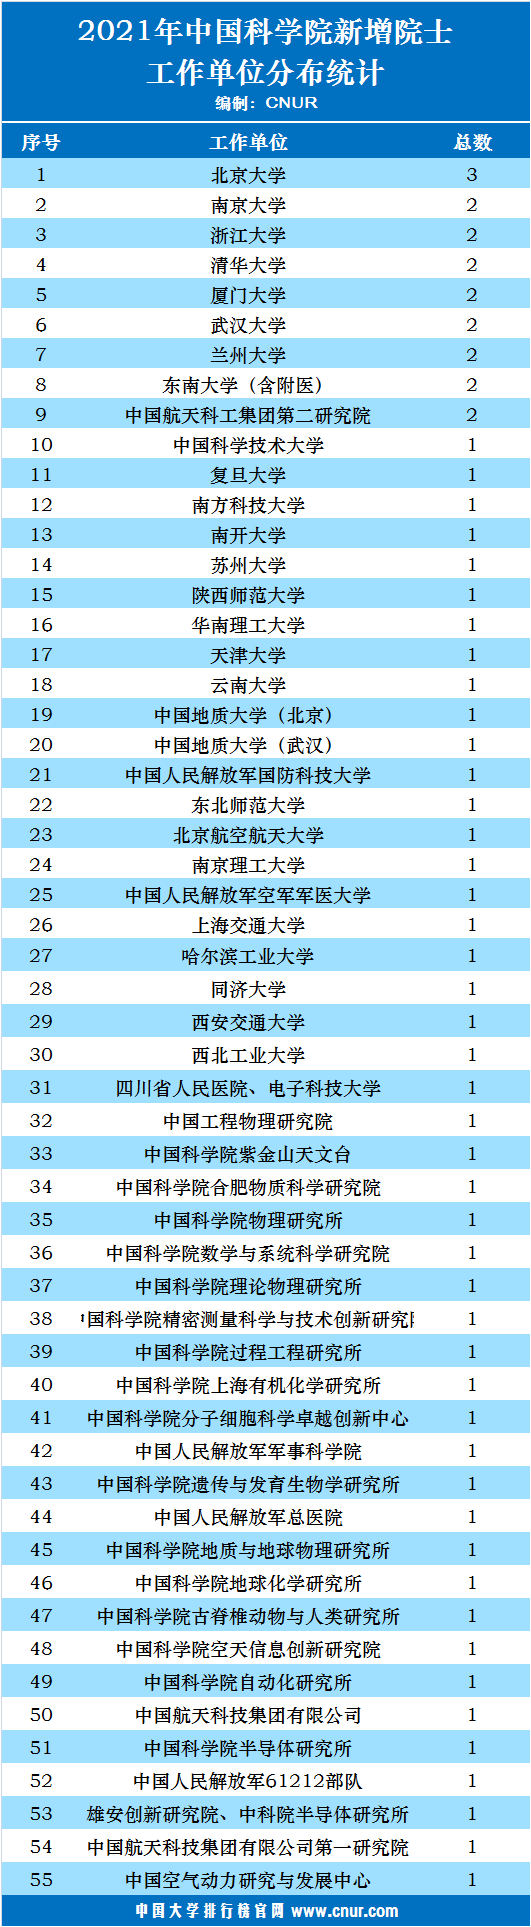 2021年中国科学院新增院士工作单位及高校分布统计-第1张图片-中国大学排行榜